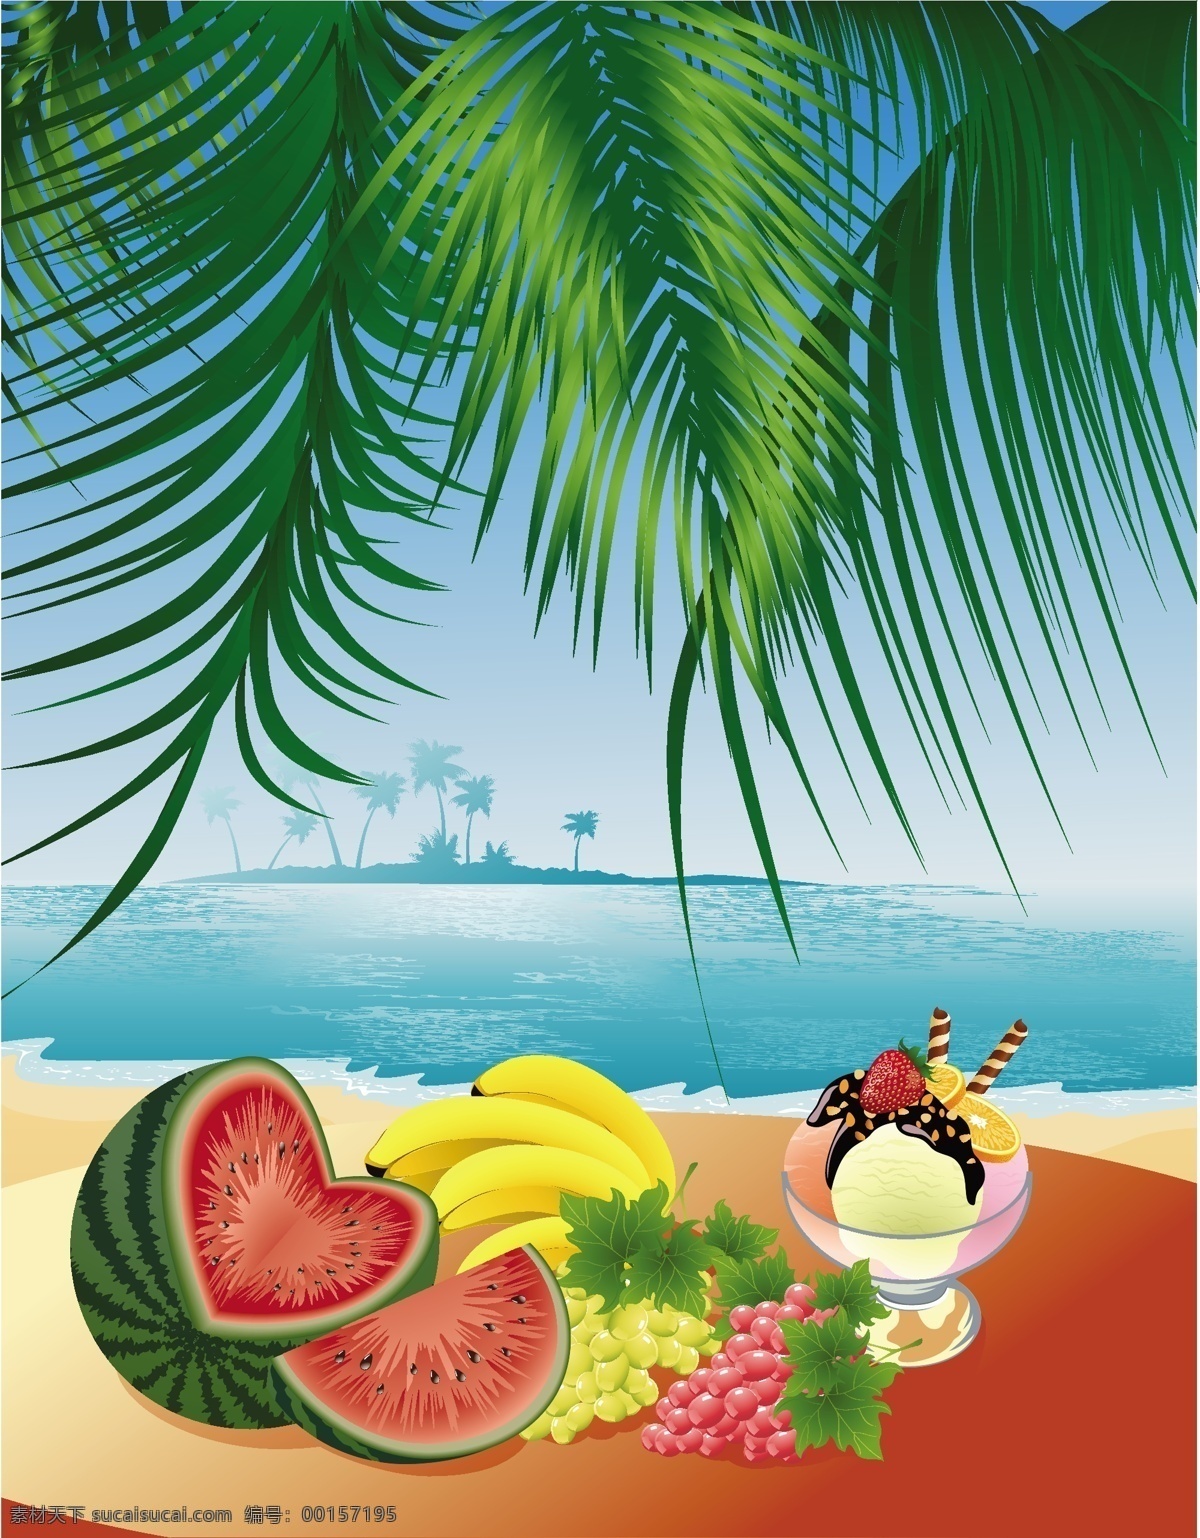 各种 载体 材料 水果 海滩 风景 冰淇淋 海 景观 葡萄 树 西瓜 香蕉 绿色的叶子 海滨景观材料 向量的水果 矢量图 其他矢量图